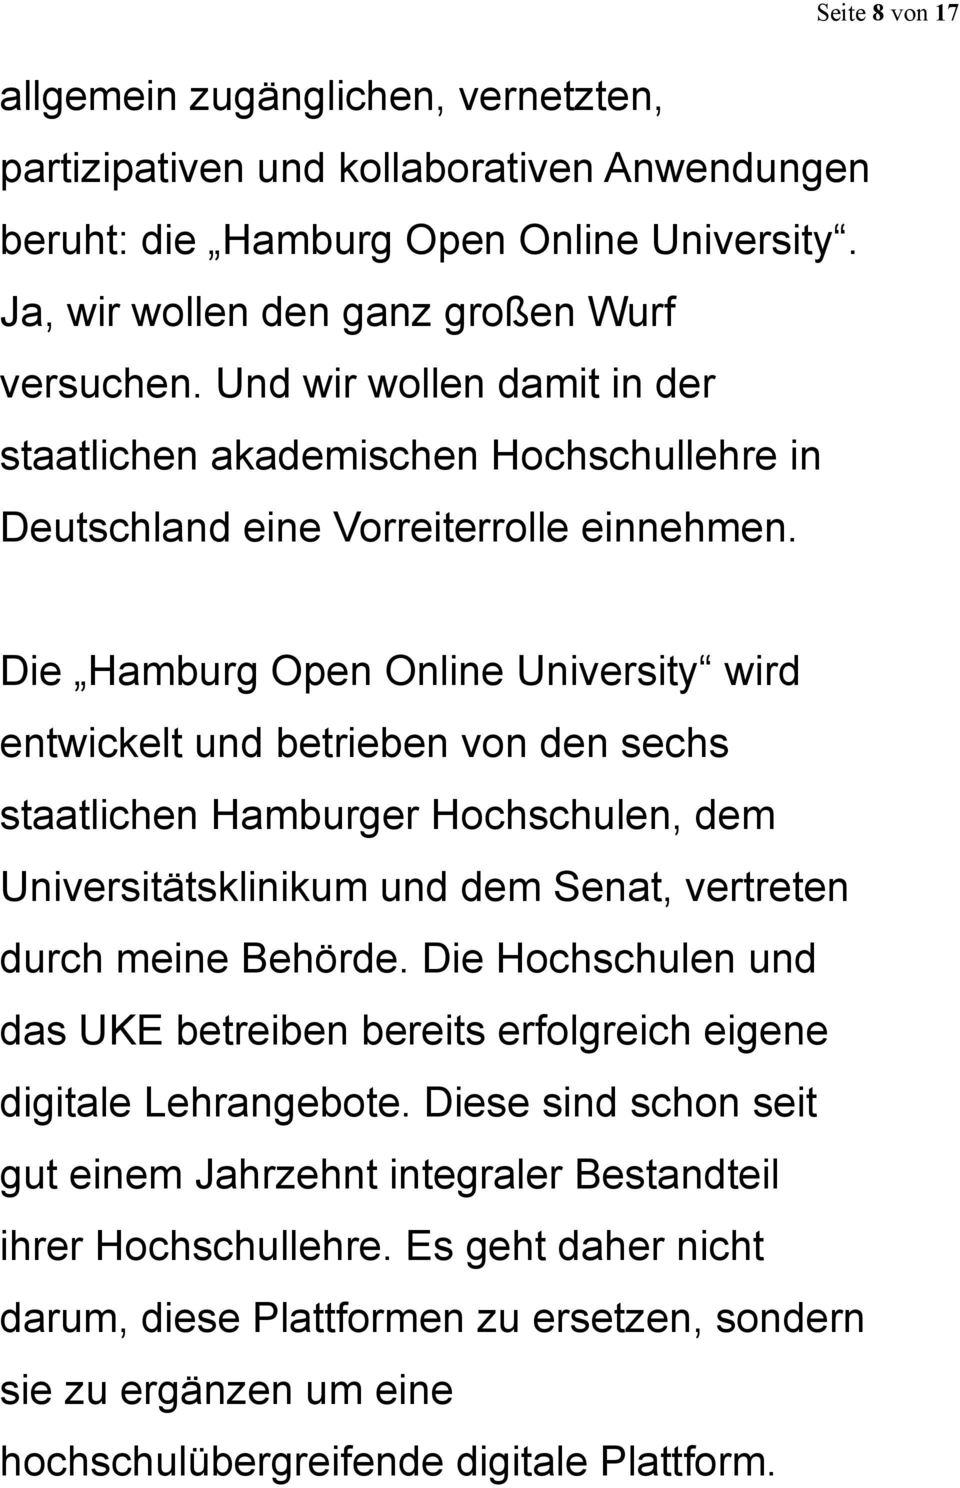 Seite 8 von 17 Die Hamburg Open Online University wird entwickelt und betrieben von den sechs staatlichen Hamburger Hochschulen, dem Universitätsklinikum und dem Senat, vertreten durch meine Behörde.